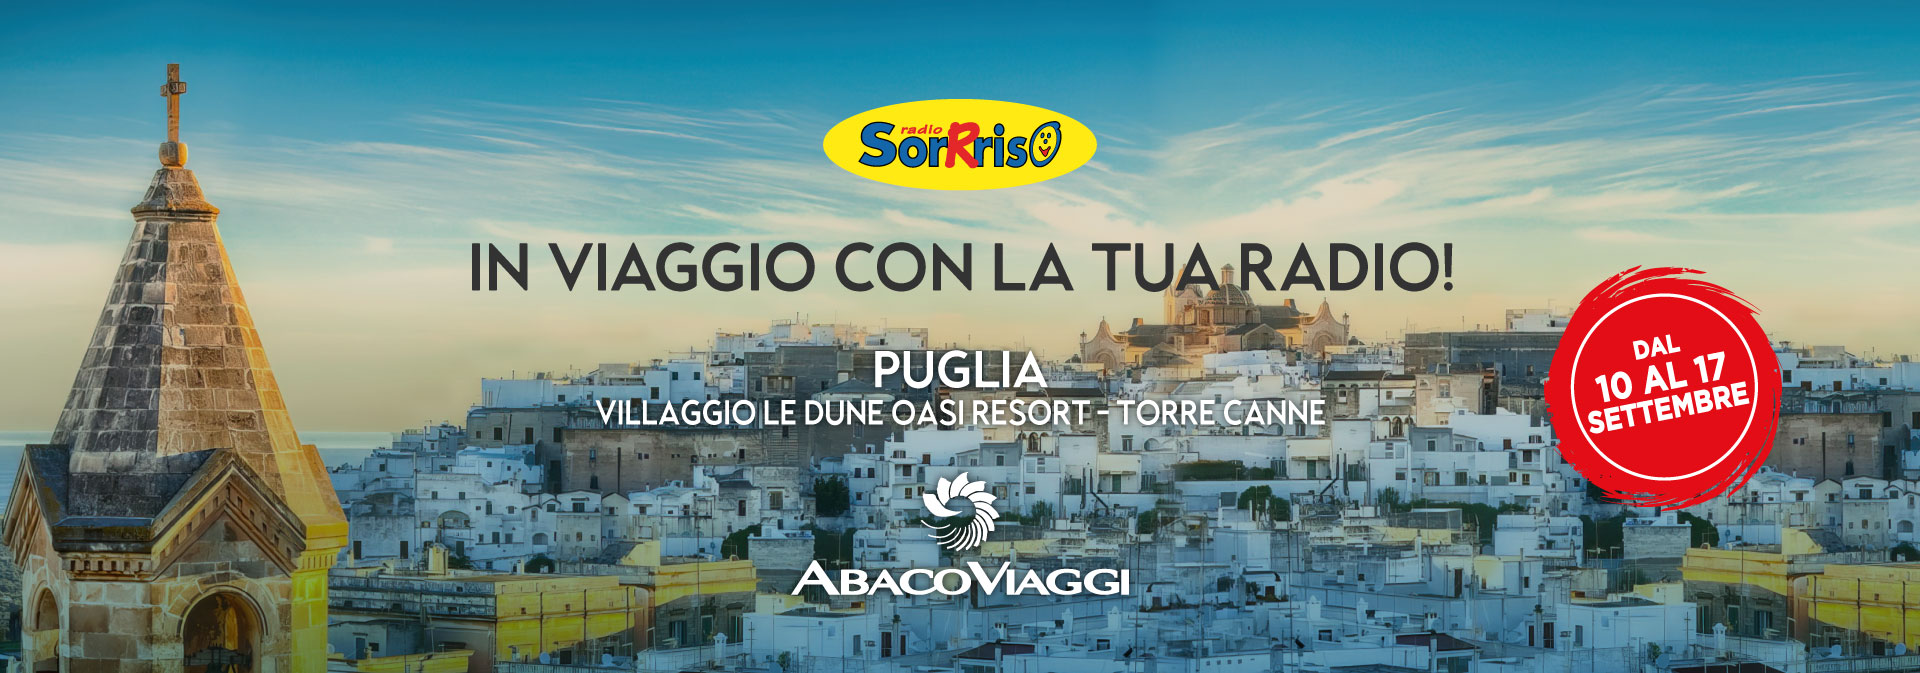 Vacanza in Puglia con Radio Sorrriso